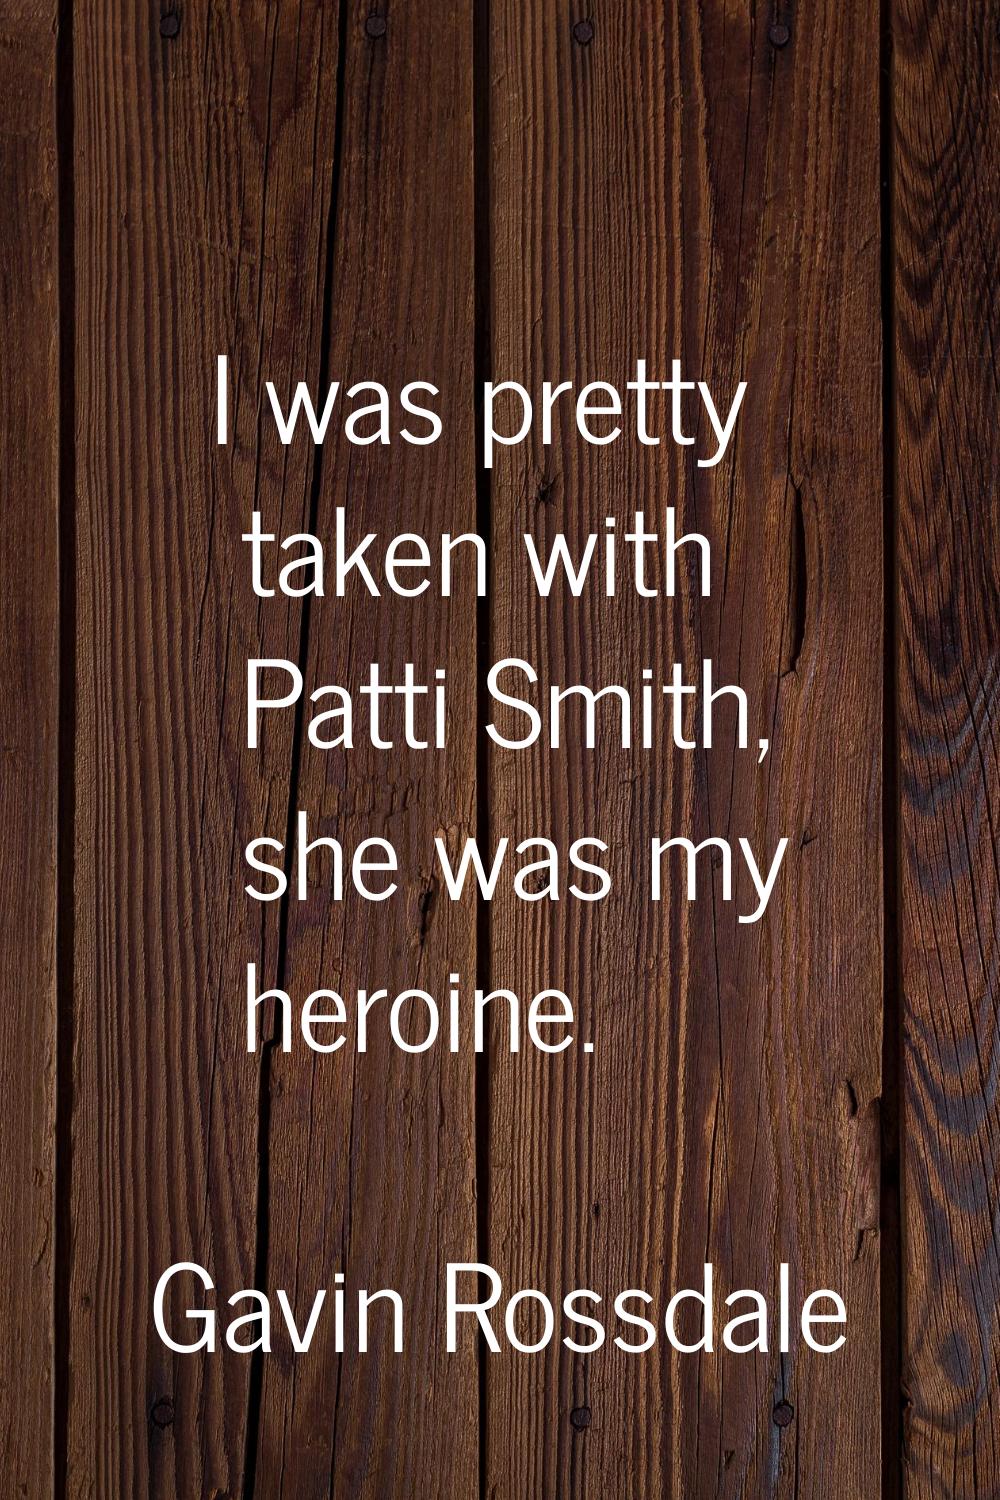 I was pretty taken with Patti Smith, she was my heroine.